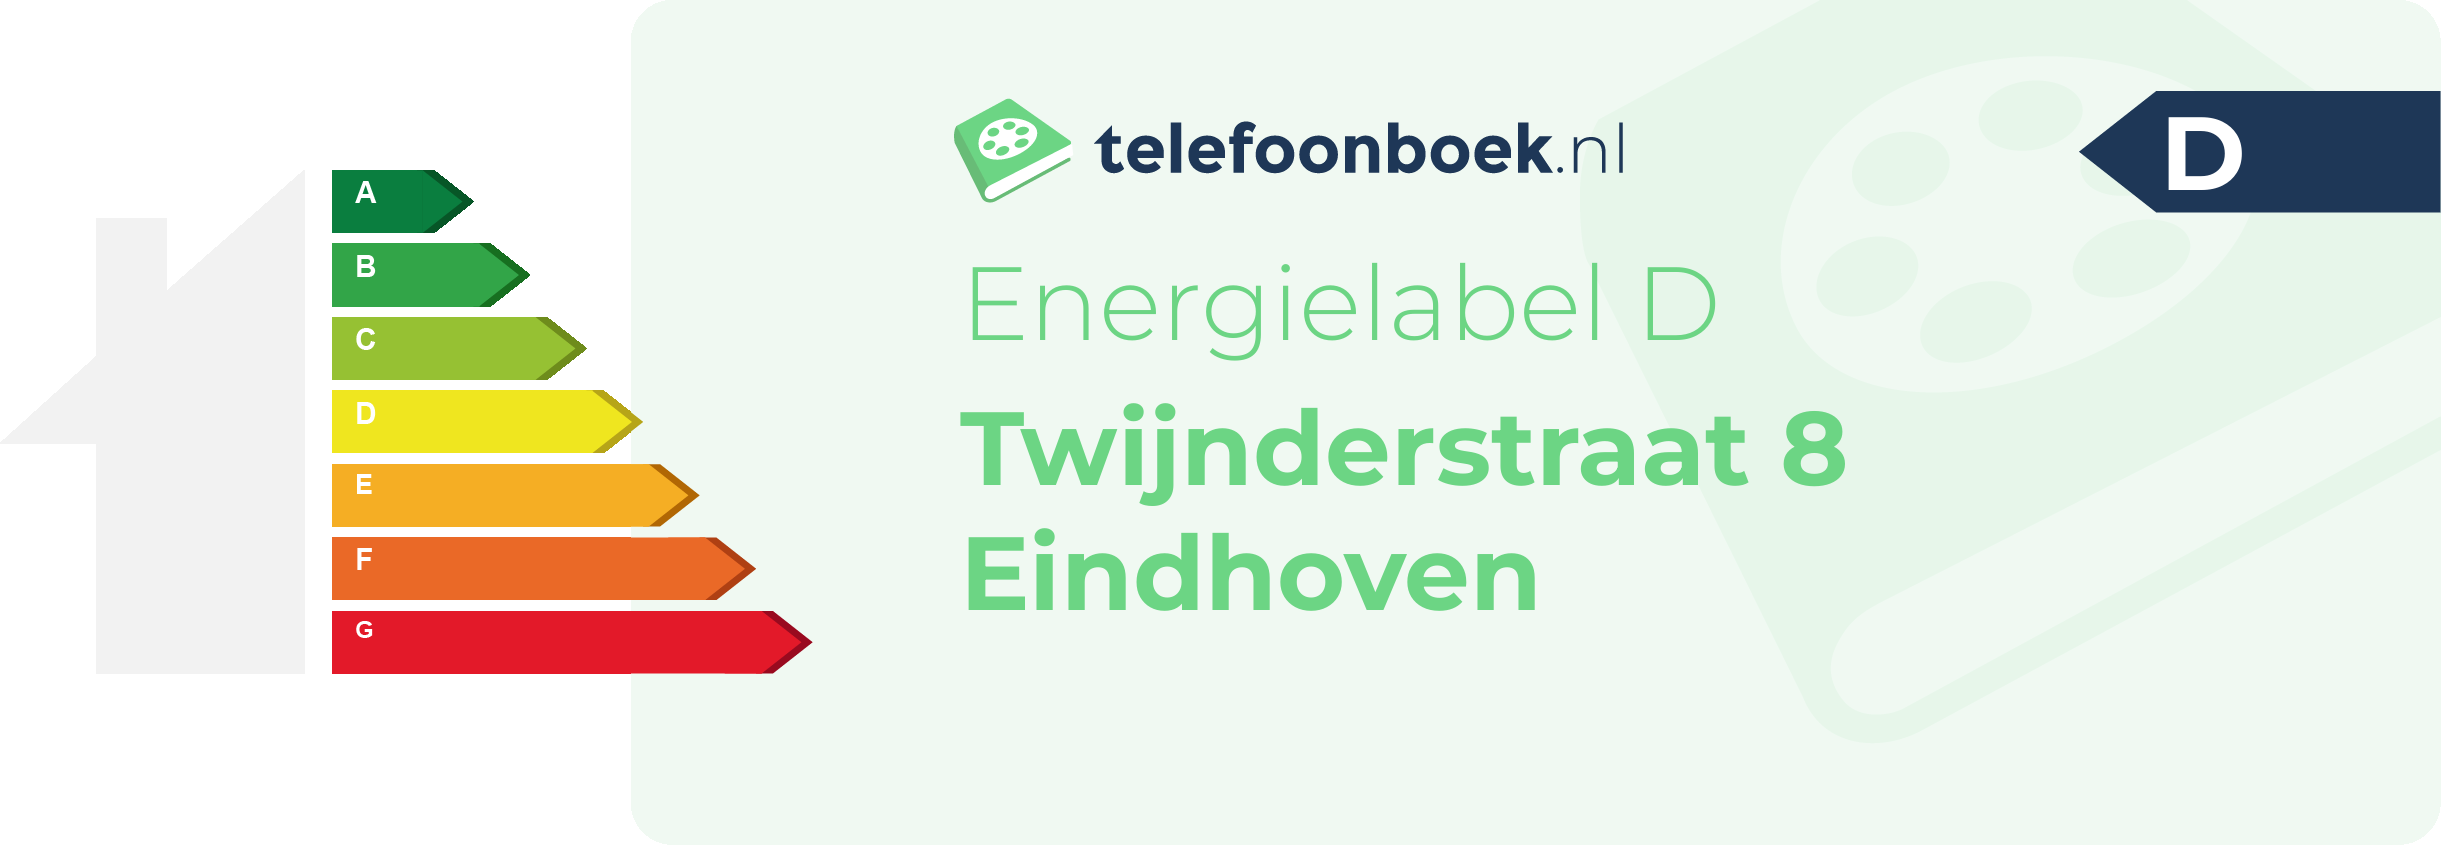 Energielabel Twijnderstraat 8 Eindhoven